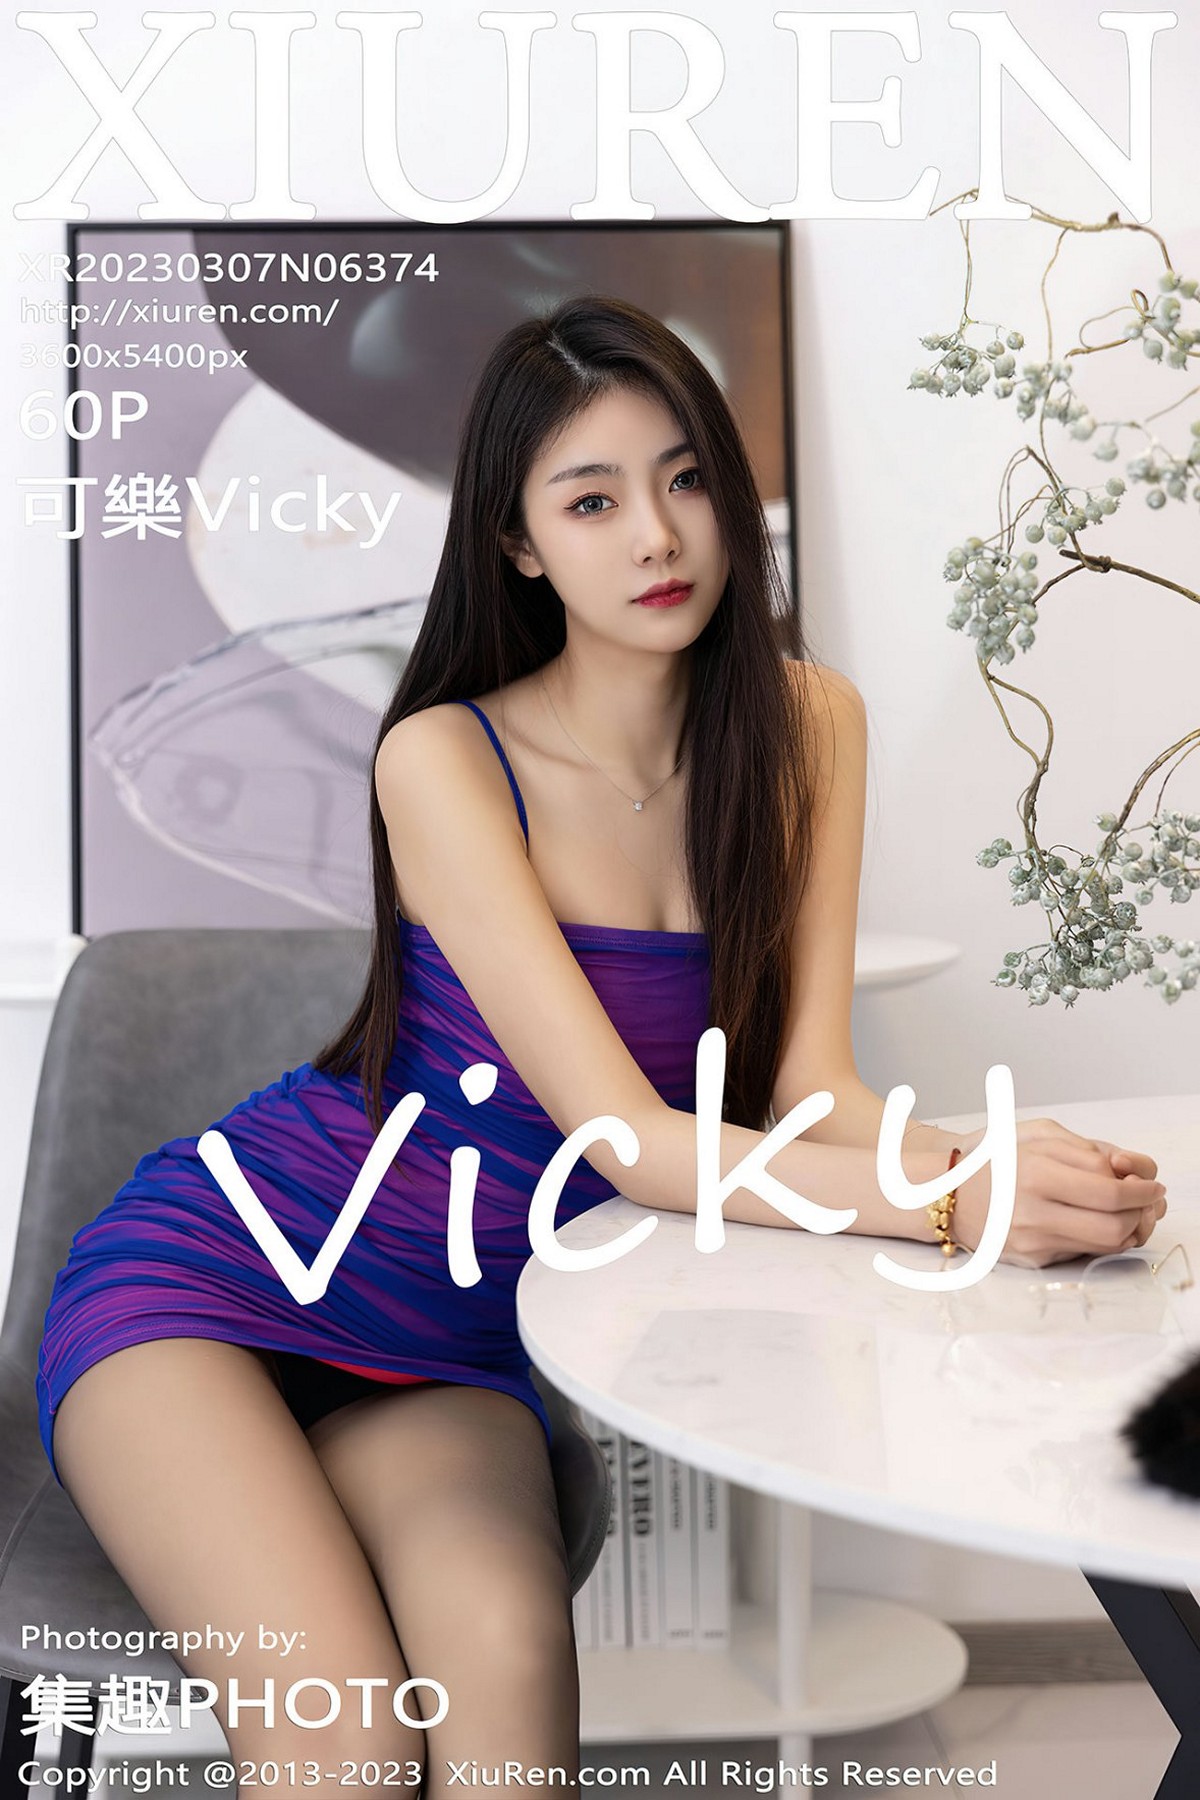 【XiuRen秀人網】2023.03.07 Vol.6374 可樂Vicky 完整版無水印寫真【60P】 - 貼圖 - 絲襪美腿 -